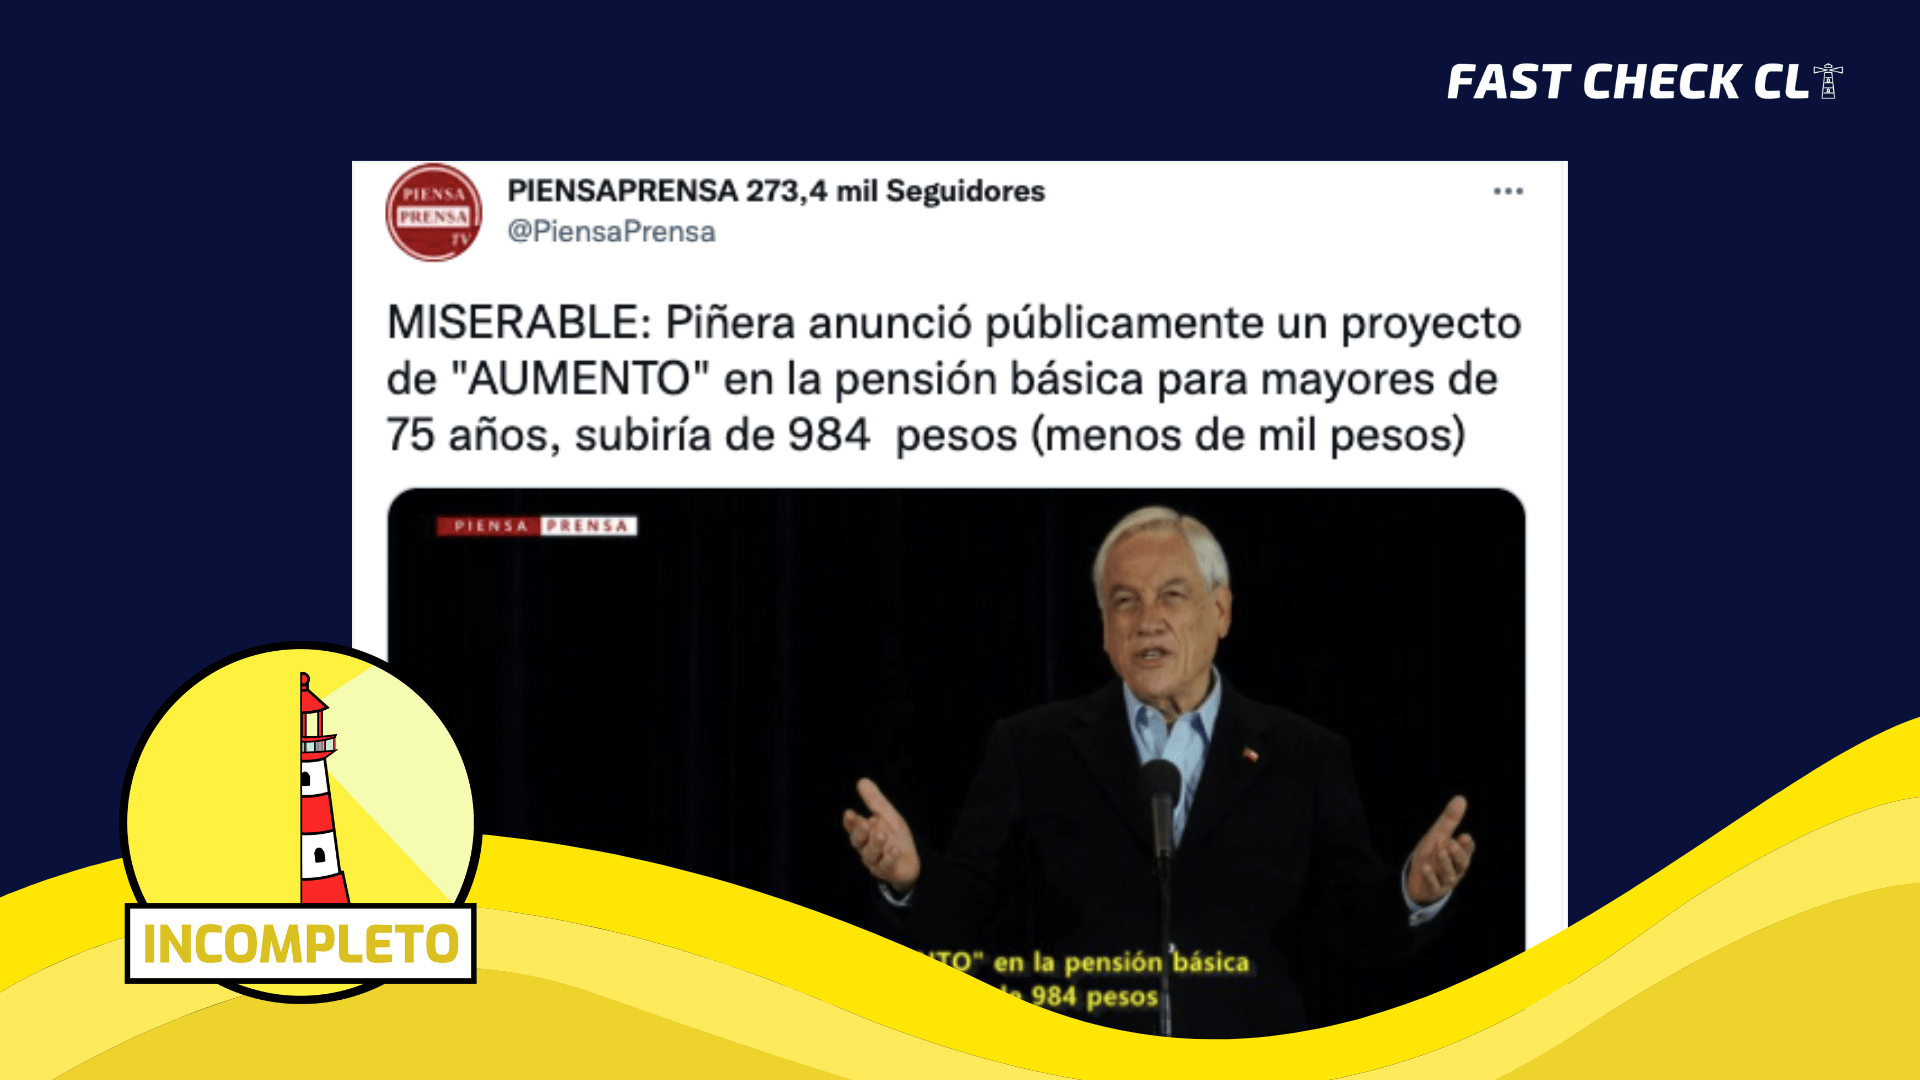 You are currently viewing “Piñera anunció públicamente un aumento en la pensión básica para mayores de 75 años por $984”: #Incompleto